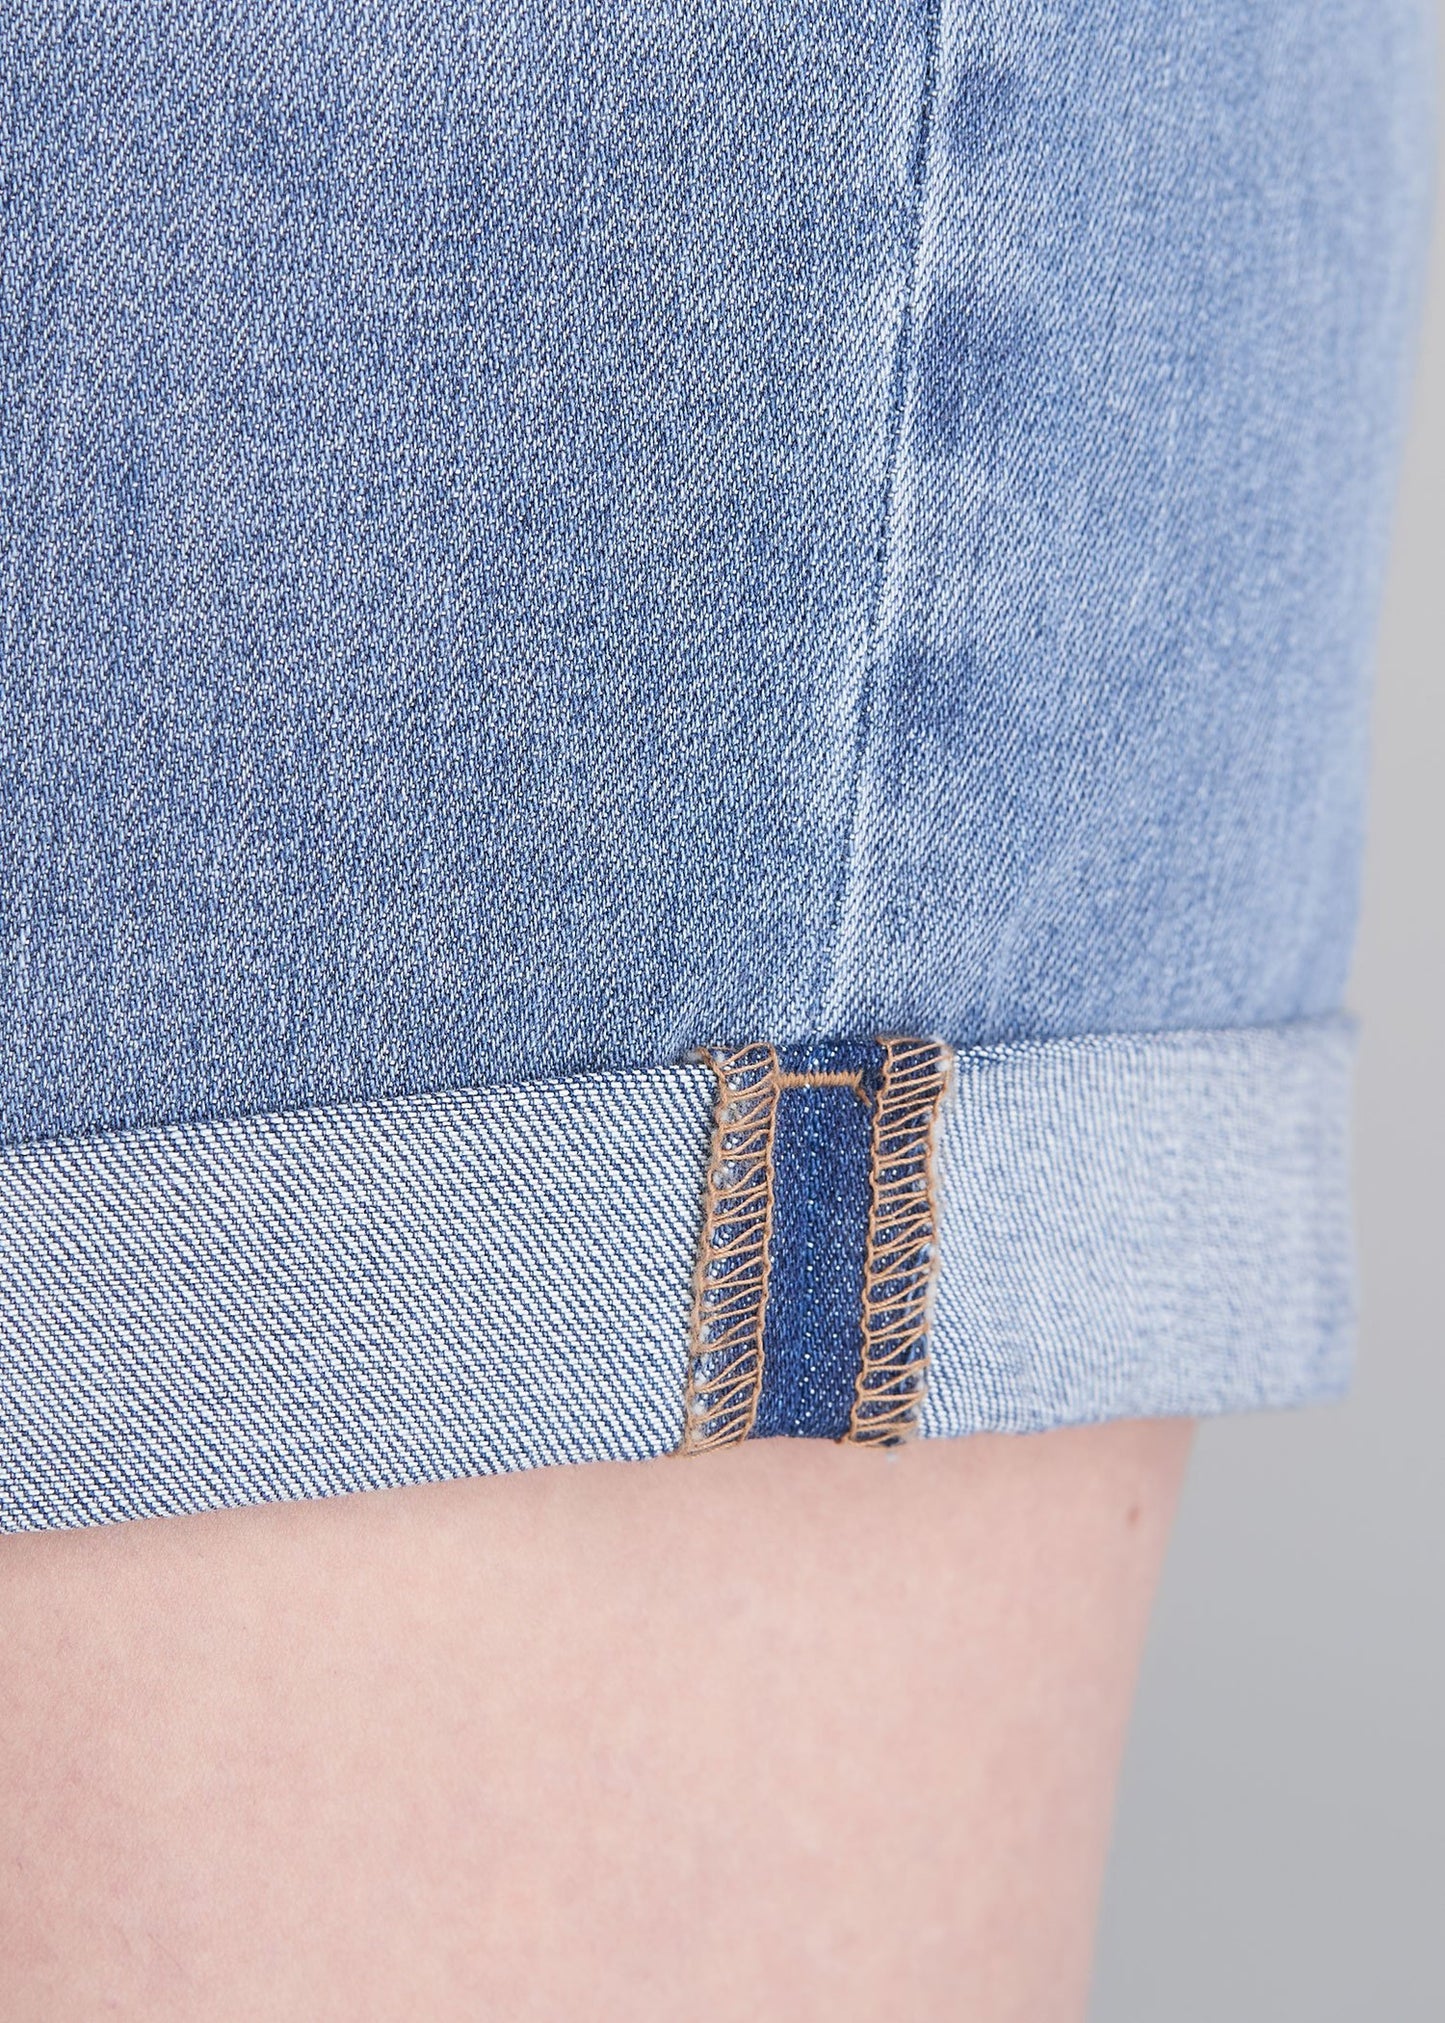 American_Tall_Womens_denim_shorts_Light_Blue-pocket-cuffdetail